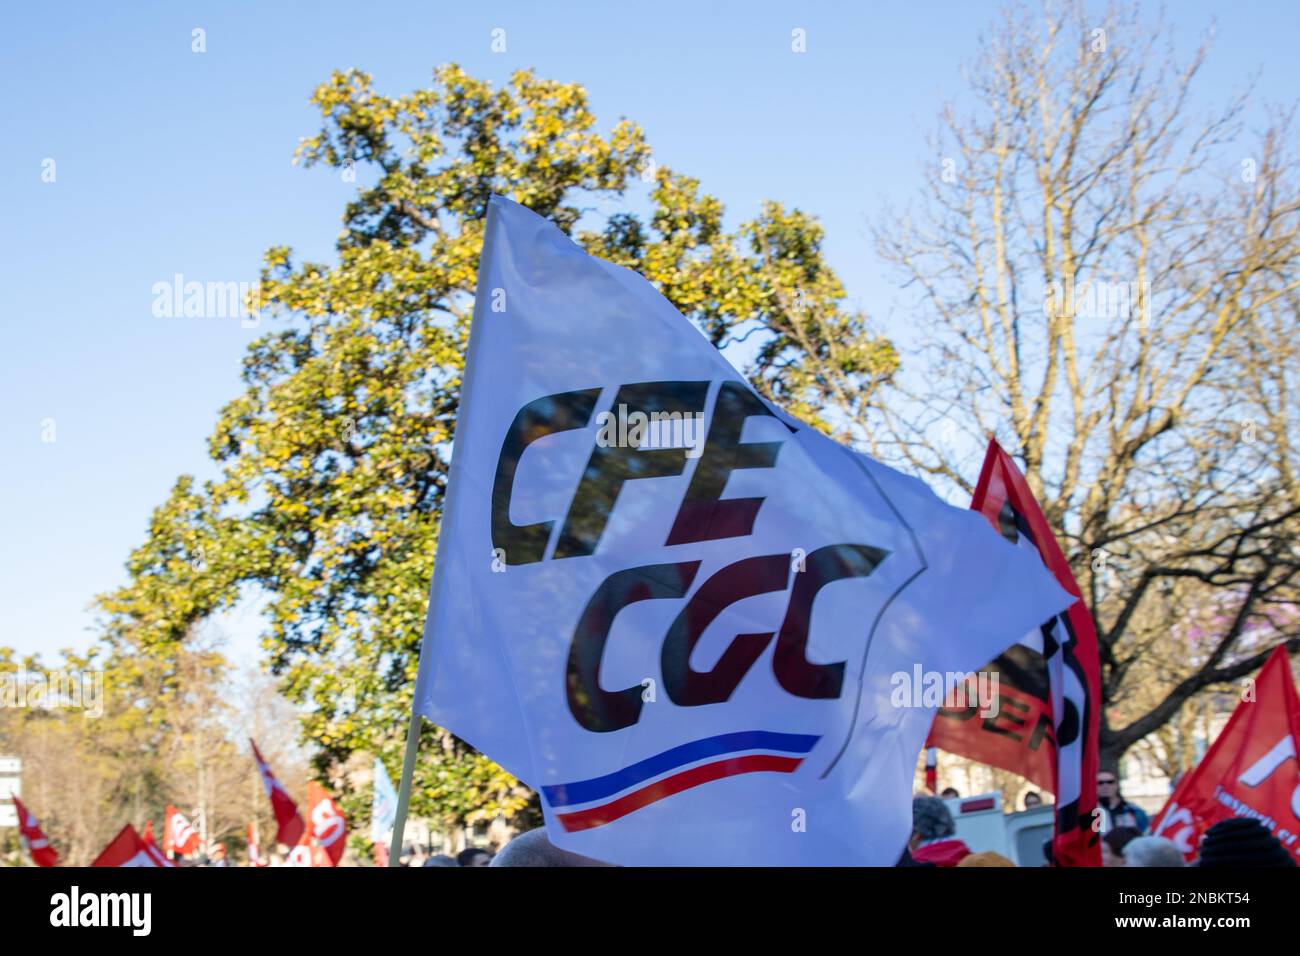 Bordeaux , Aquitaine France - 12 02 2023 : cfe cgc-Textzeichen und Markenlogo auf der Flagge des französischen Dachverbands der Management General Confederation of Ex Stockfoto